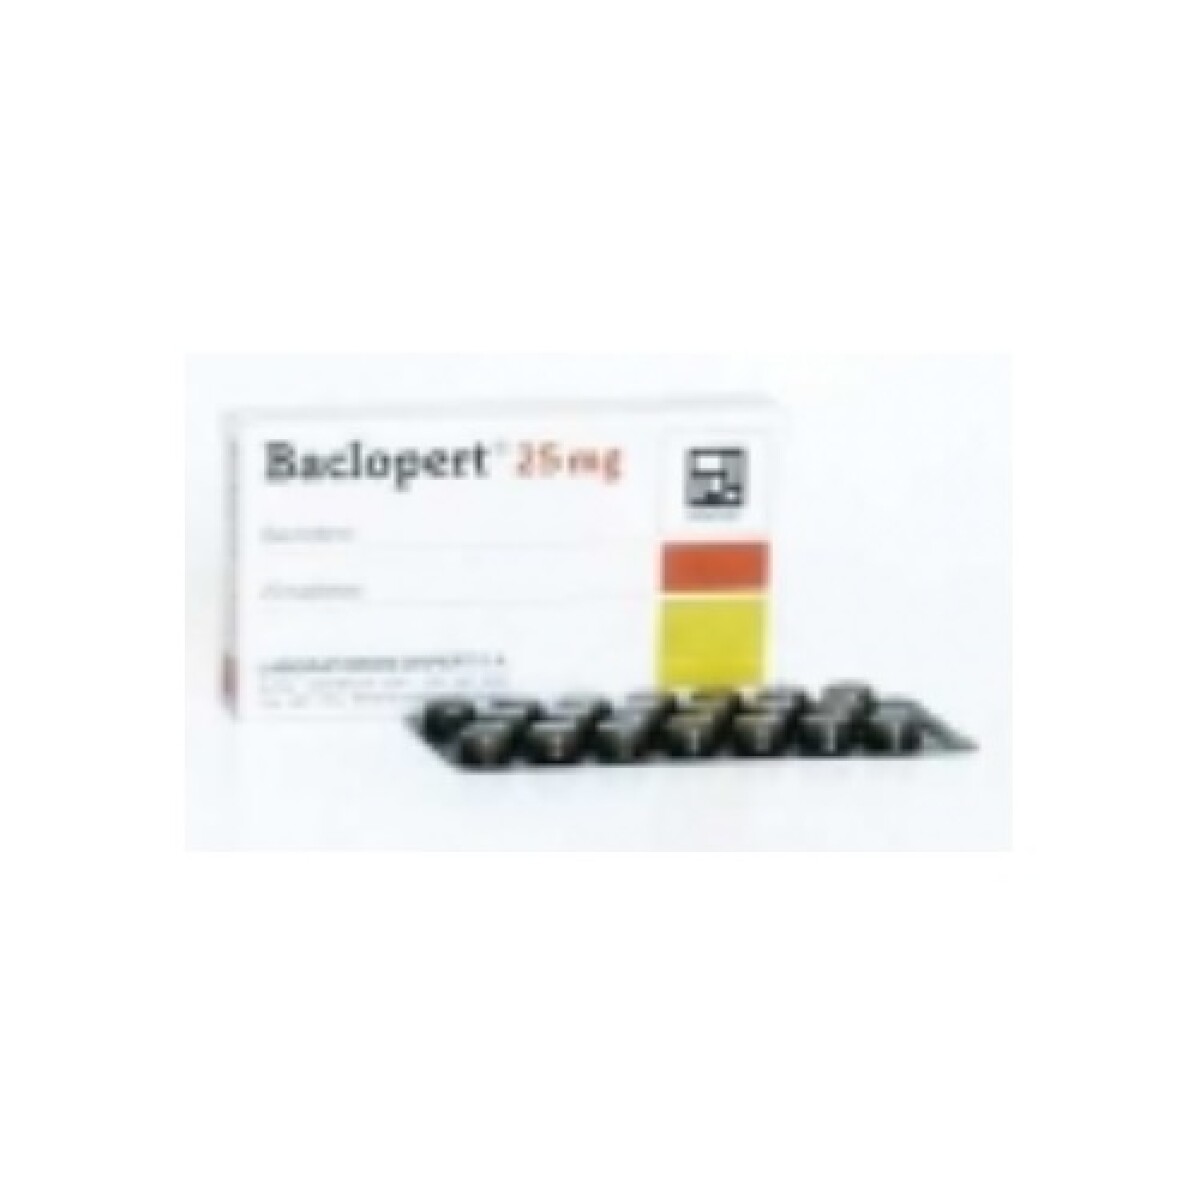 Baclopert 25 Mg. 20 Tabs. 